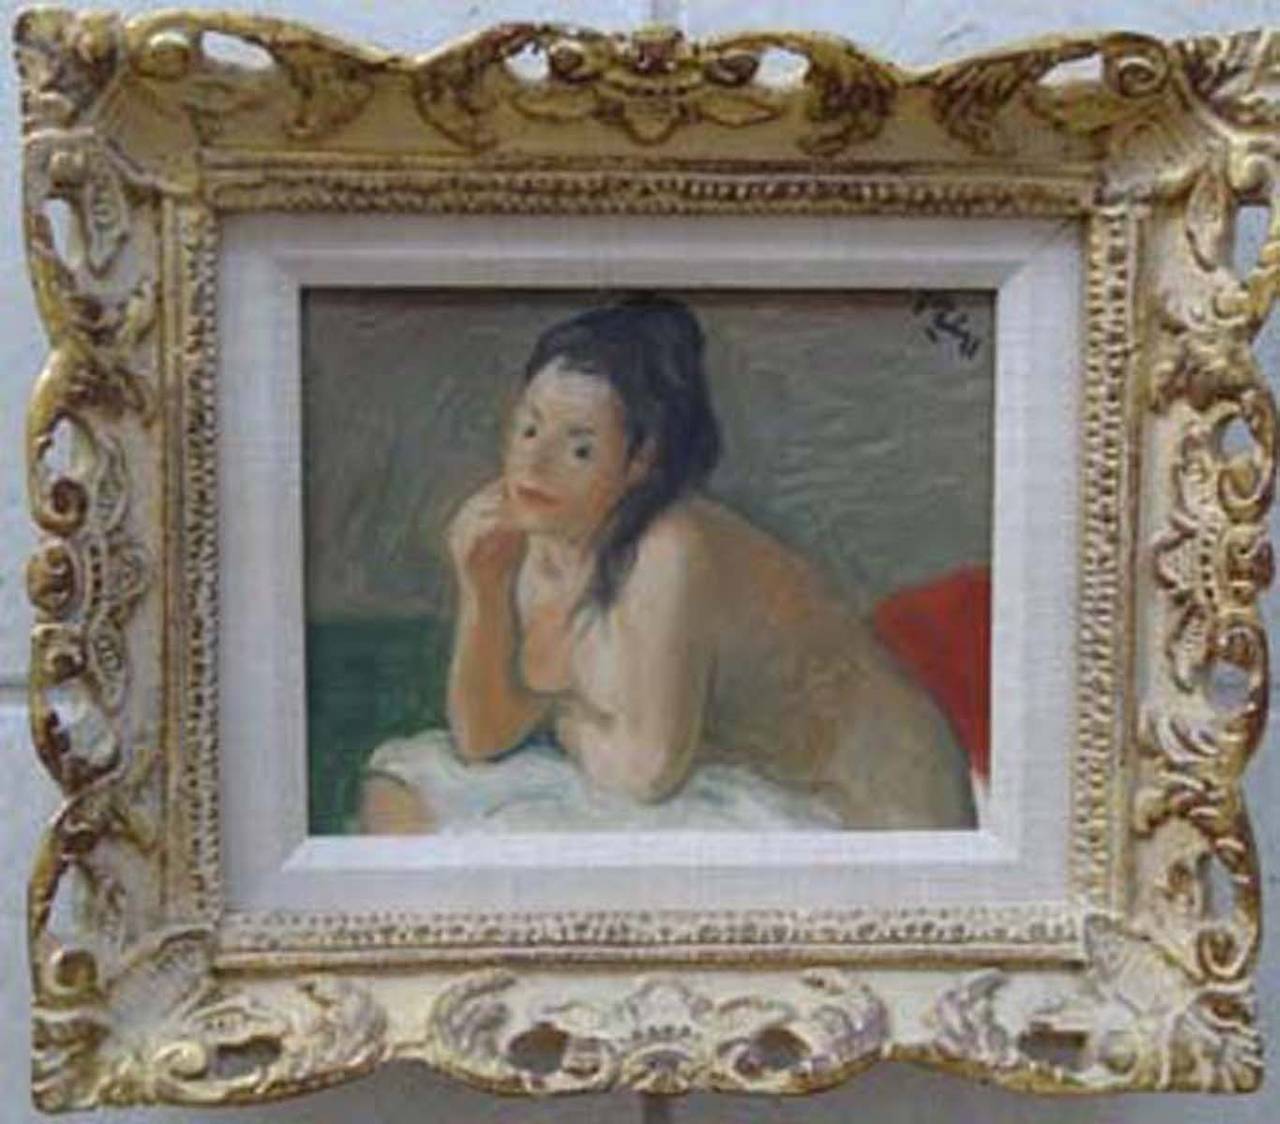 Robert Philipp Nude Painting - Seated Nude